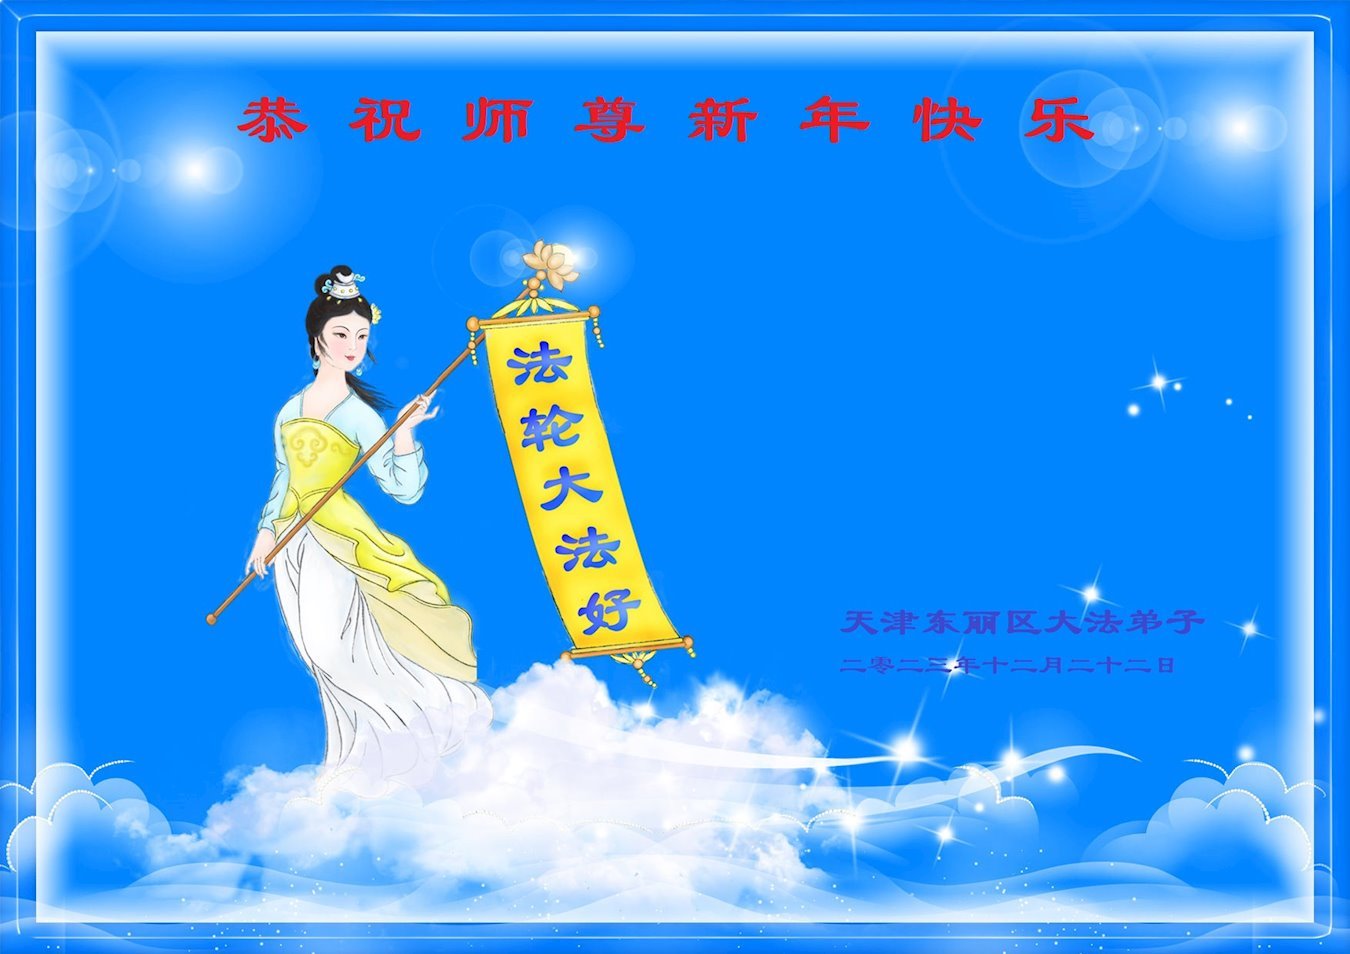 Image for article Les pratiquants de Falun Dafa de Tianjin souhaitent respectueusement au vénérable Maître Li Hongzhi une Bonne et Heureuse Année ! (25 vœux)